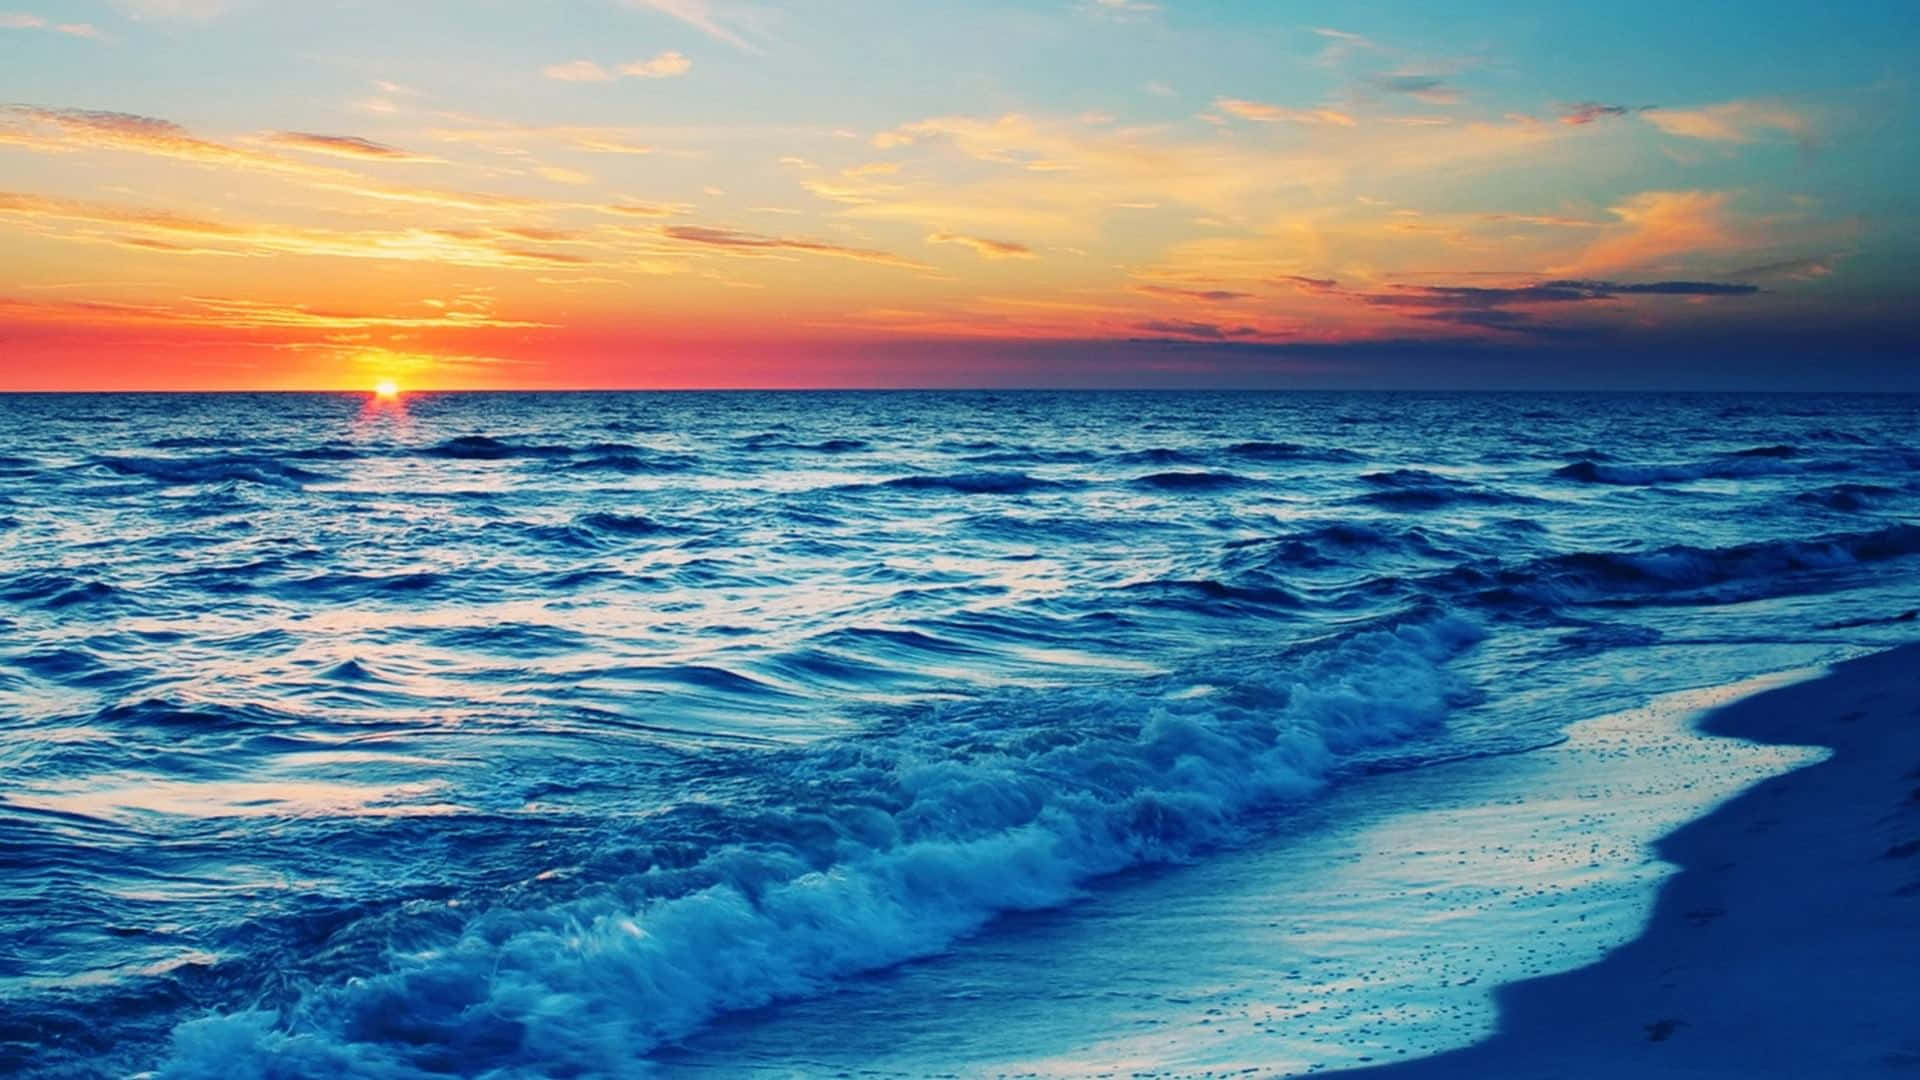 A Golden Sunset Over A Serene Beach Background